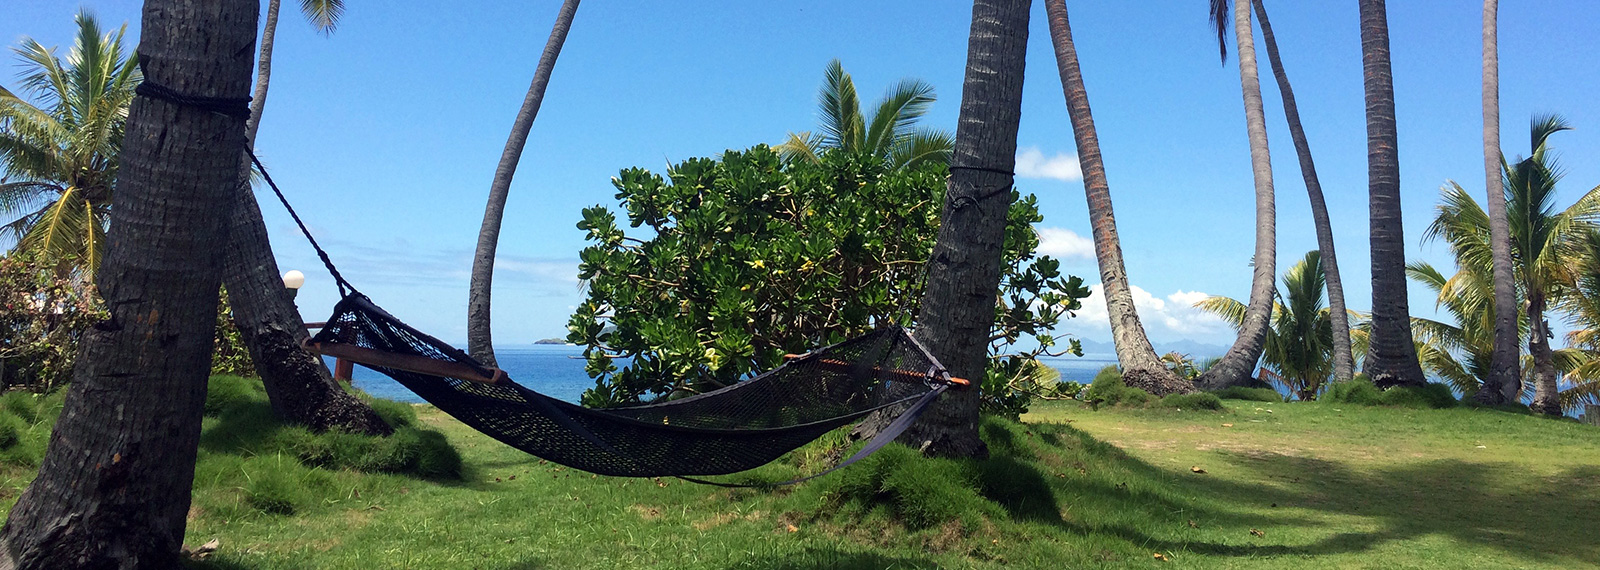 Relax medzi palmami na Fiji (Fidži) počas individuálnej dovolenky